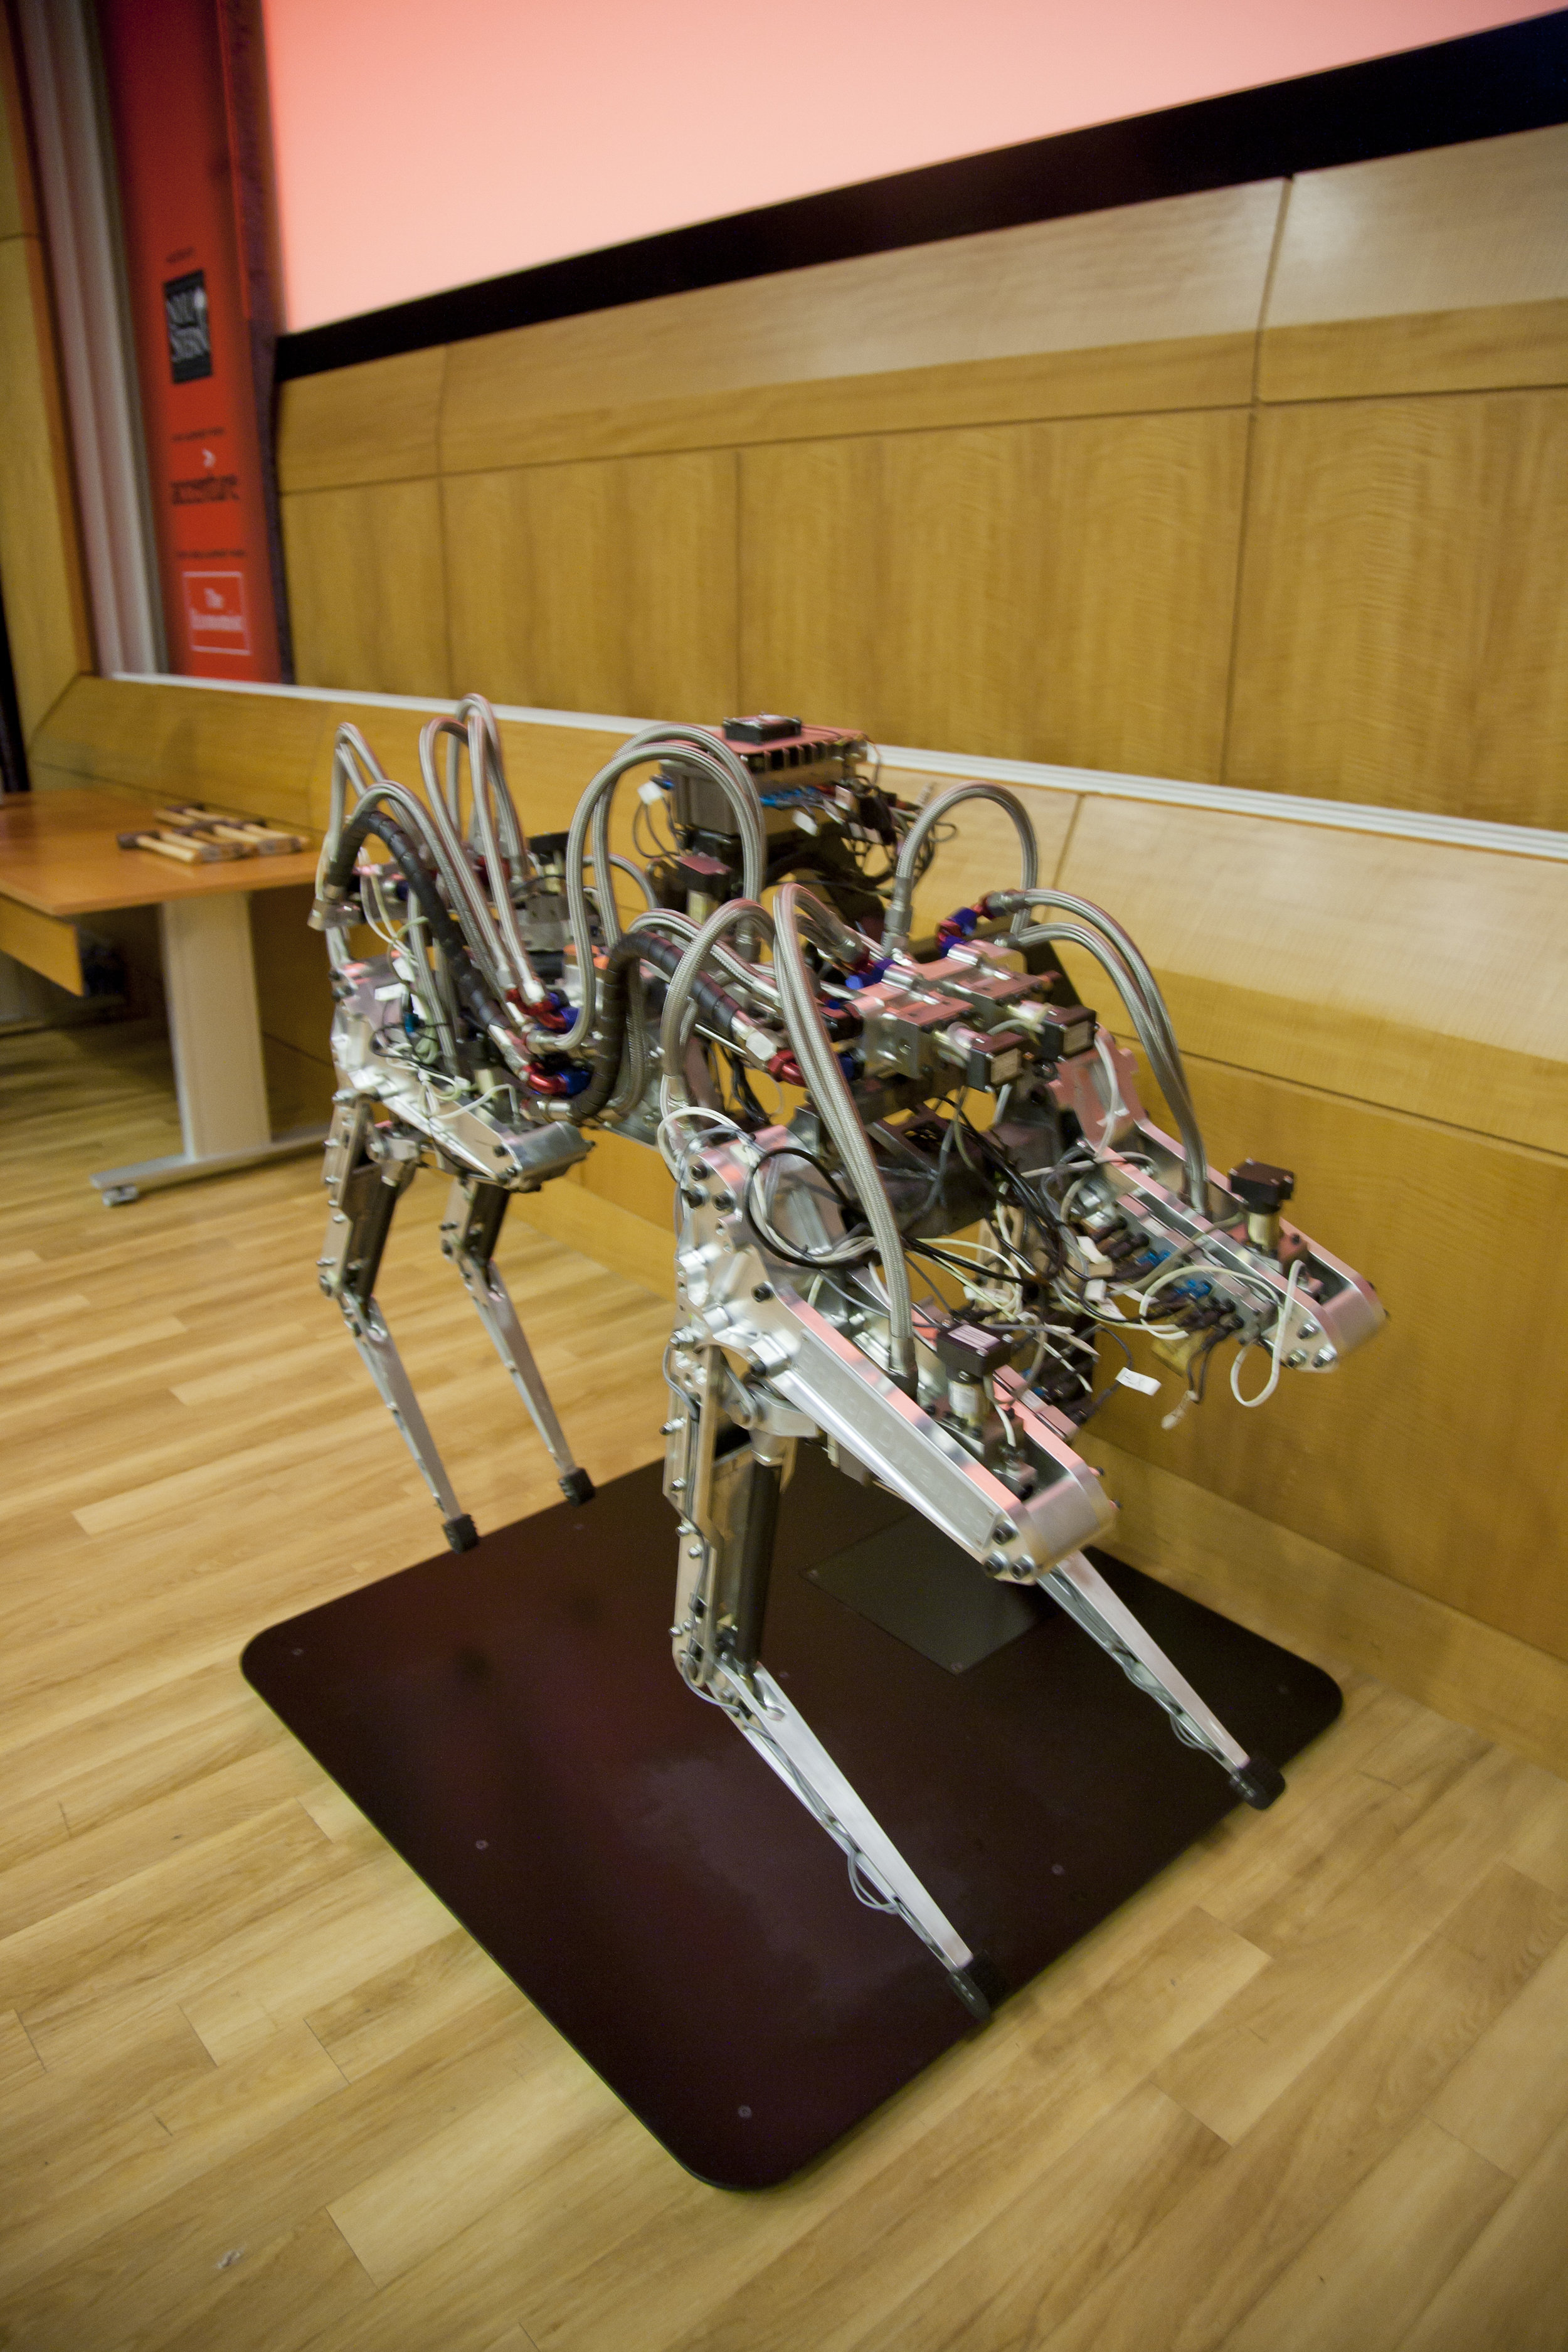 DARPA - Cheeta Robot